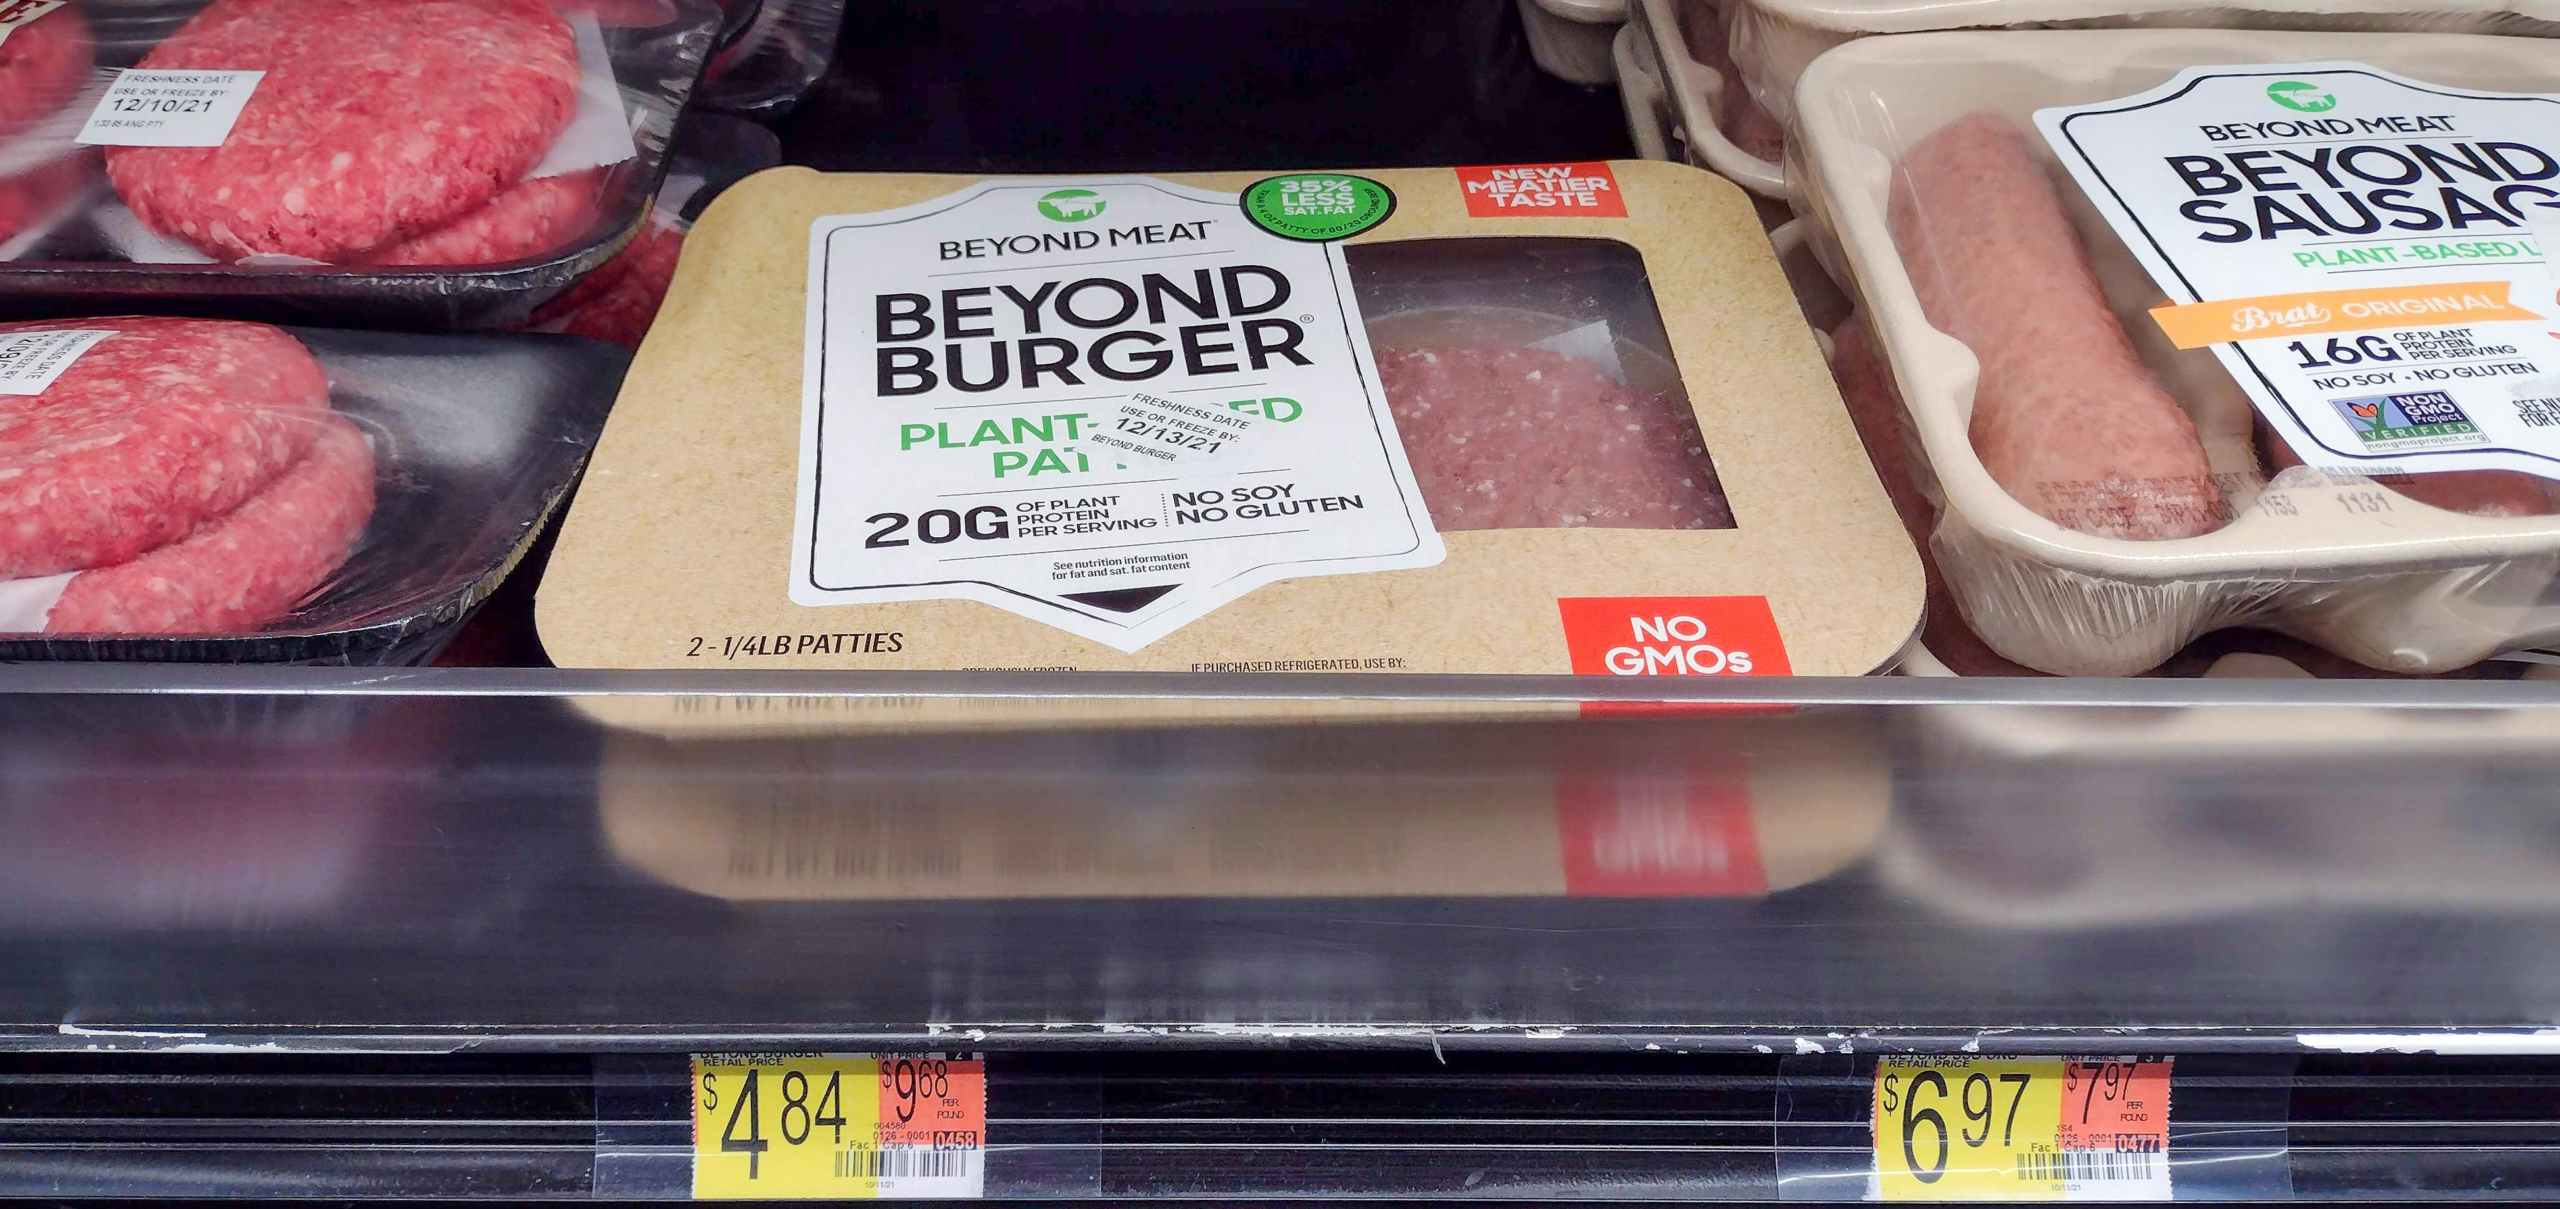 Beyond Burger Patties at Walmart